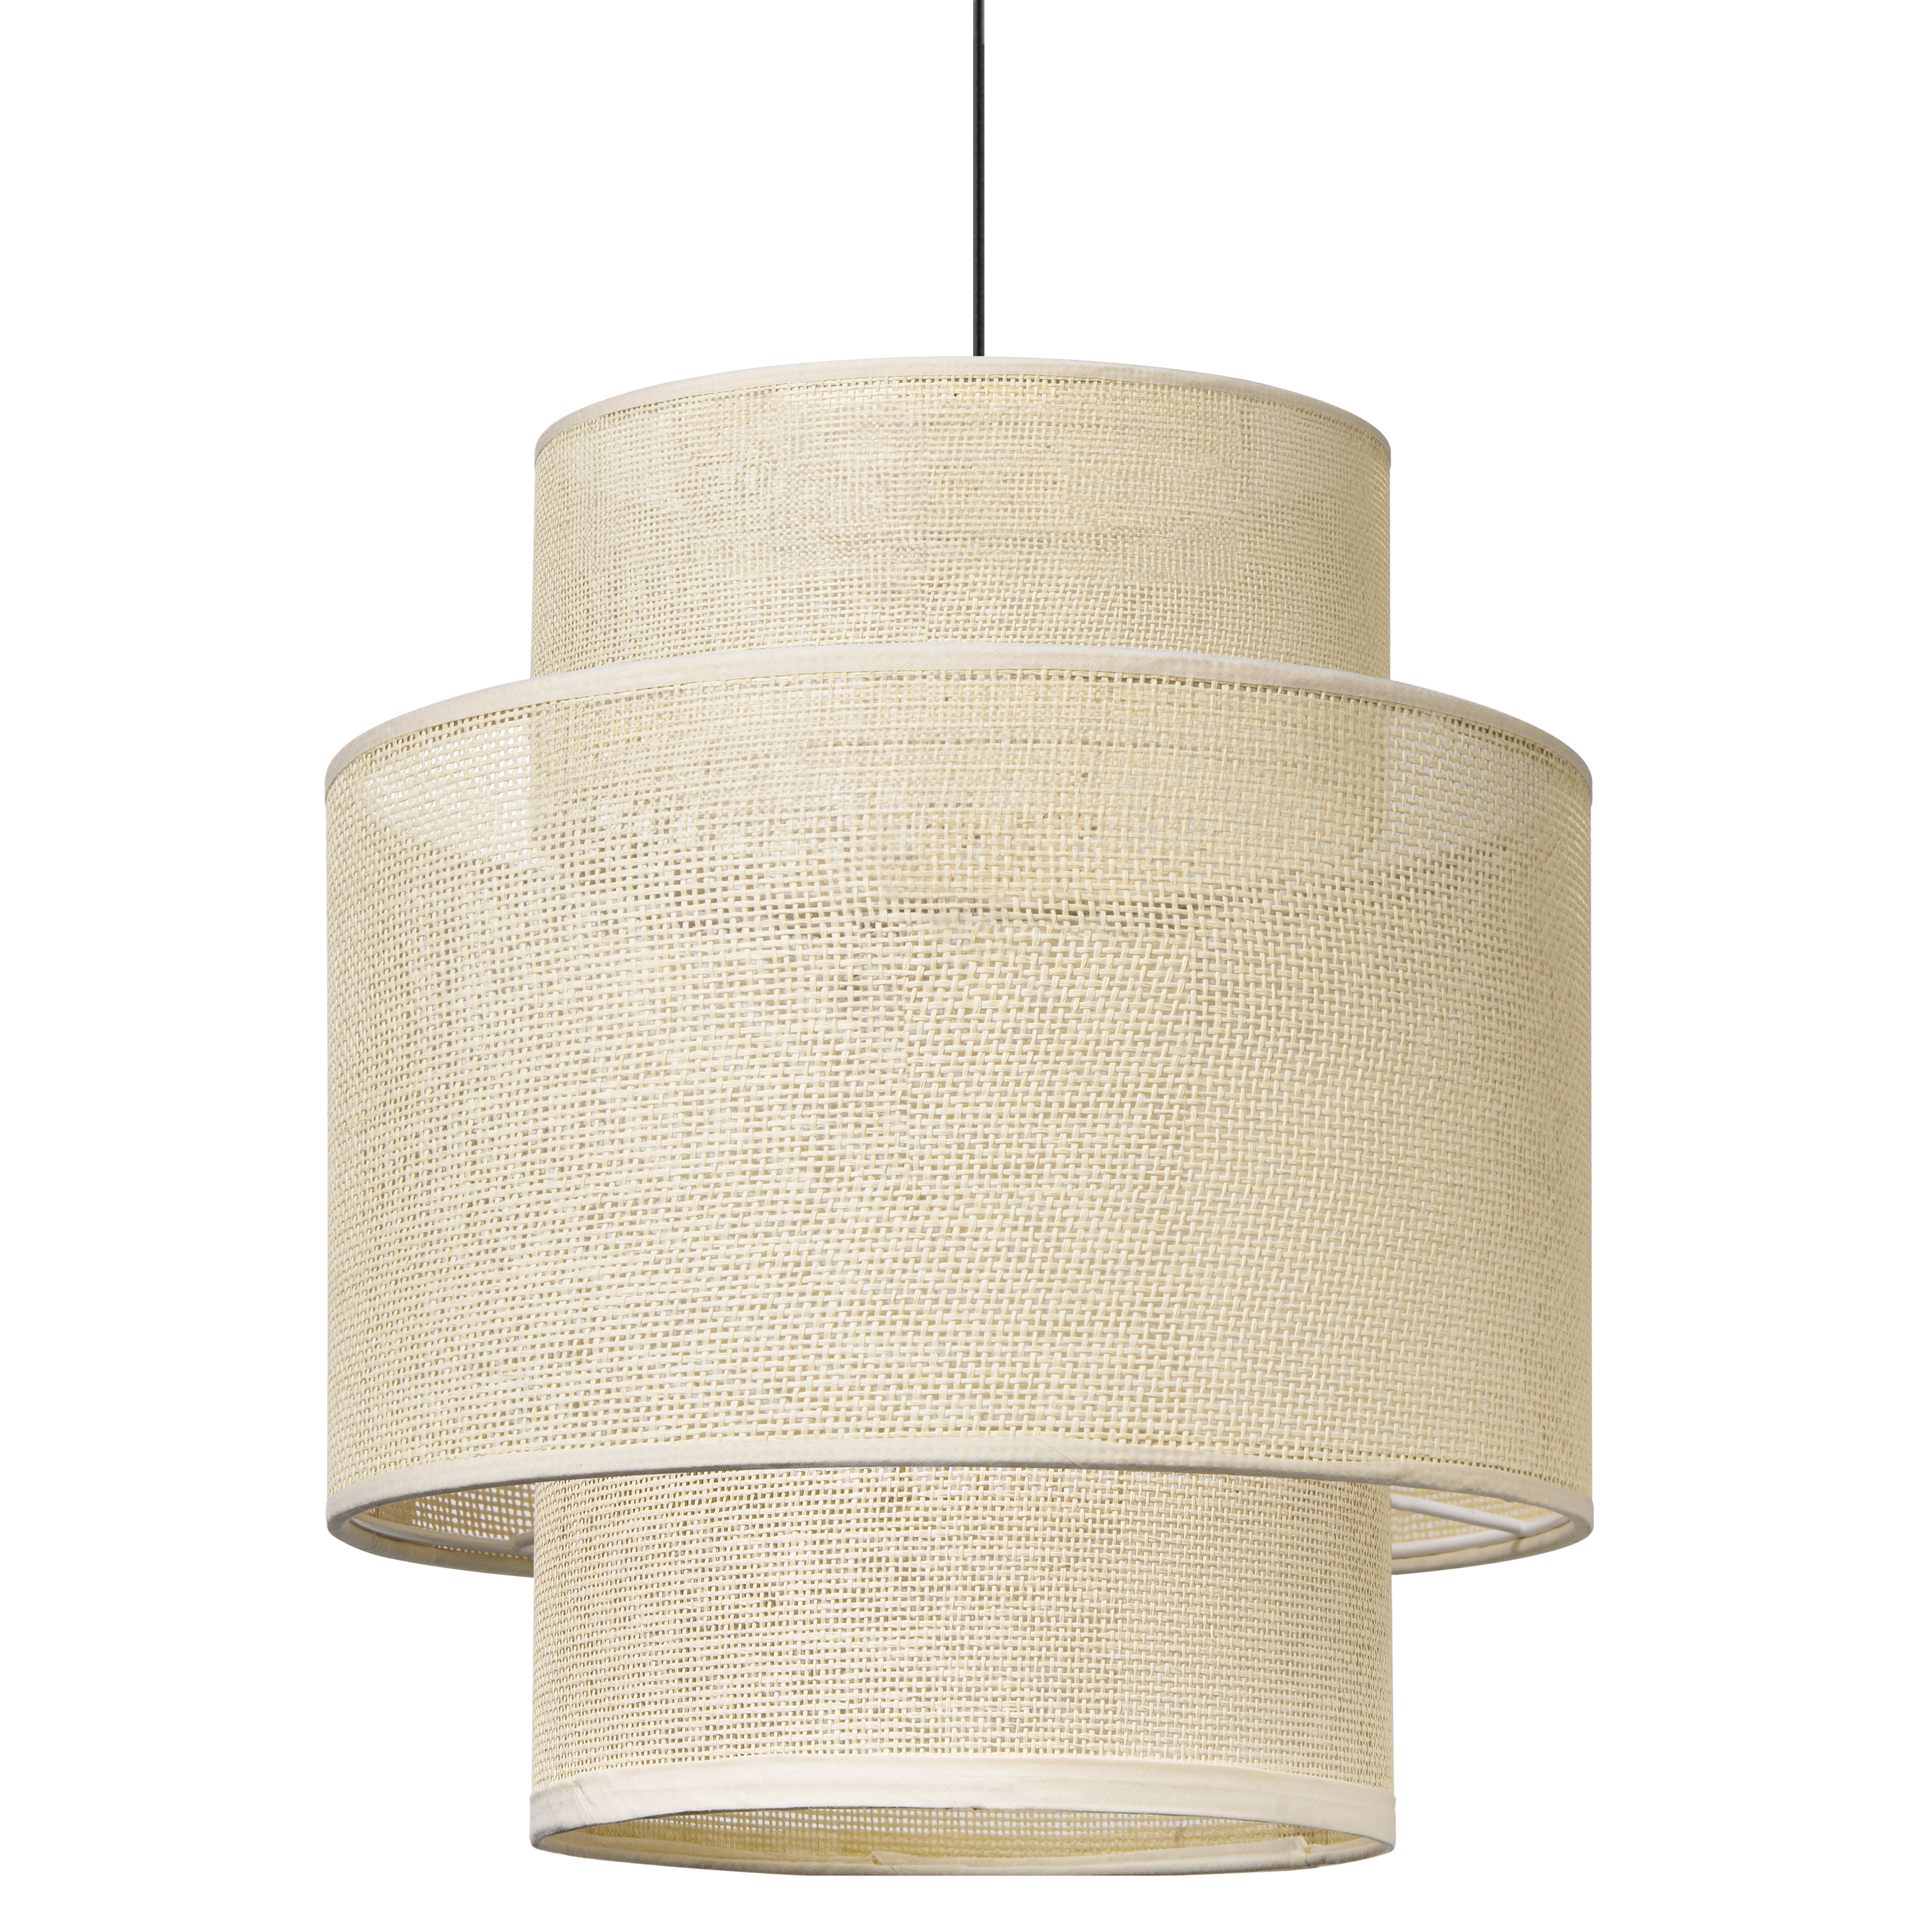 Tangla lighting - TLP7013-01NT - LED Pendant lamp 1 Light - linen - natural - yarn - standard - E27